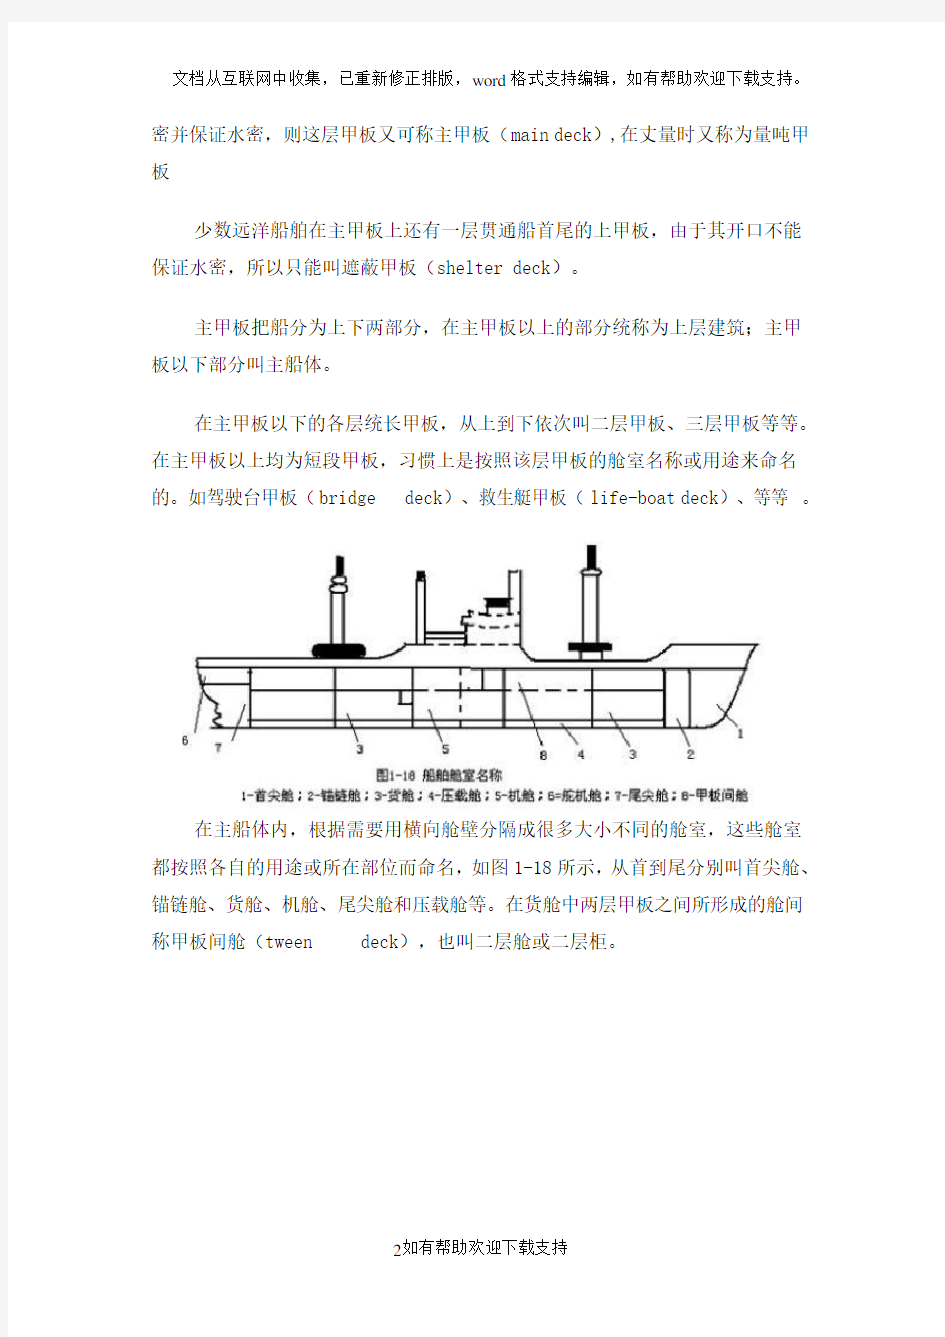 船舶主要构件结构图